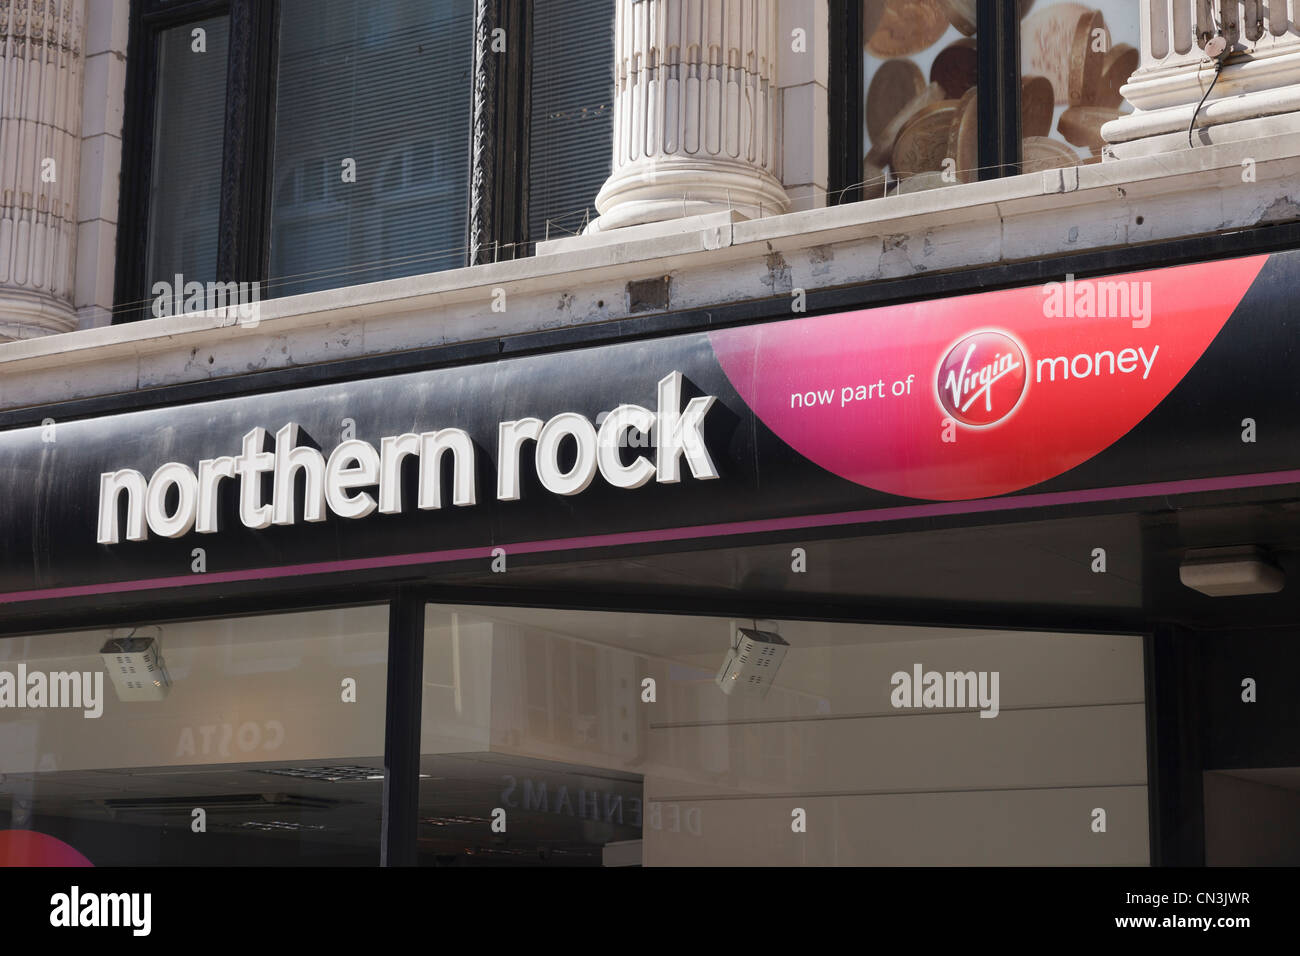 La construction de la société Northern Rock et Virgin Money bank branch signe. Yorkshire, Angleterre, Royaume-Uni, Grande Bretagne. Banque D'Images